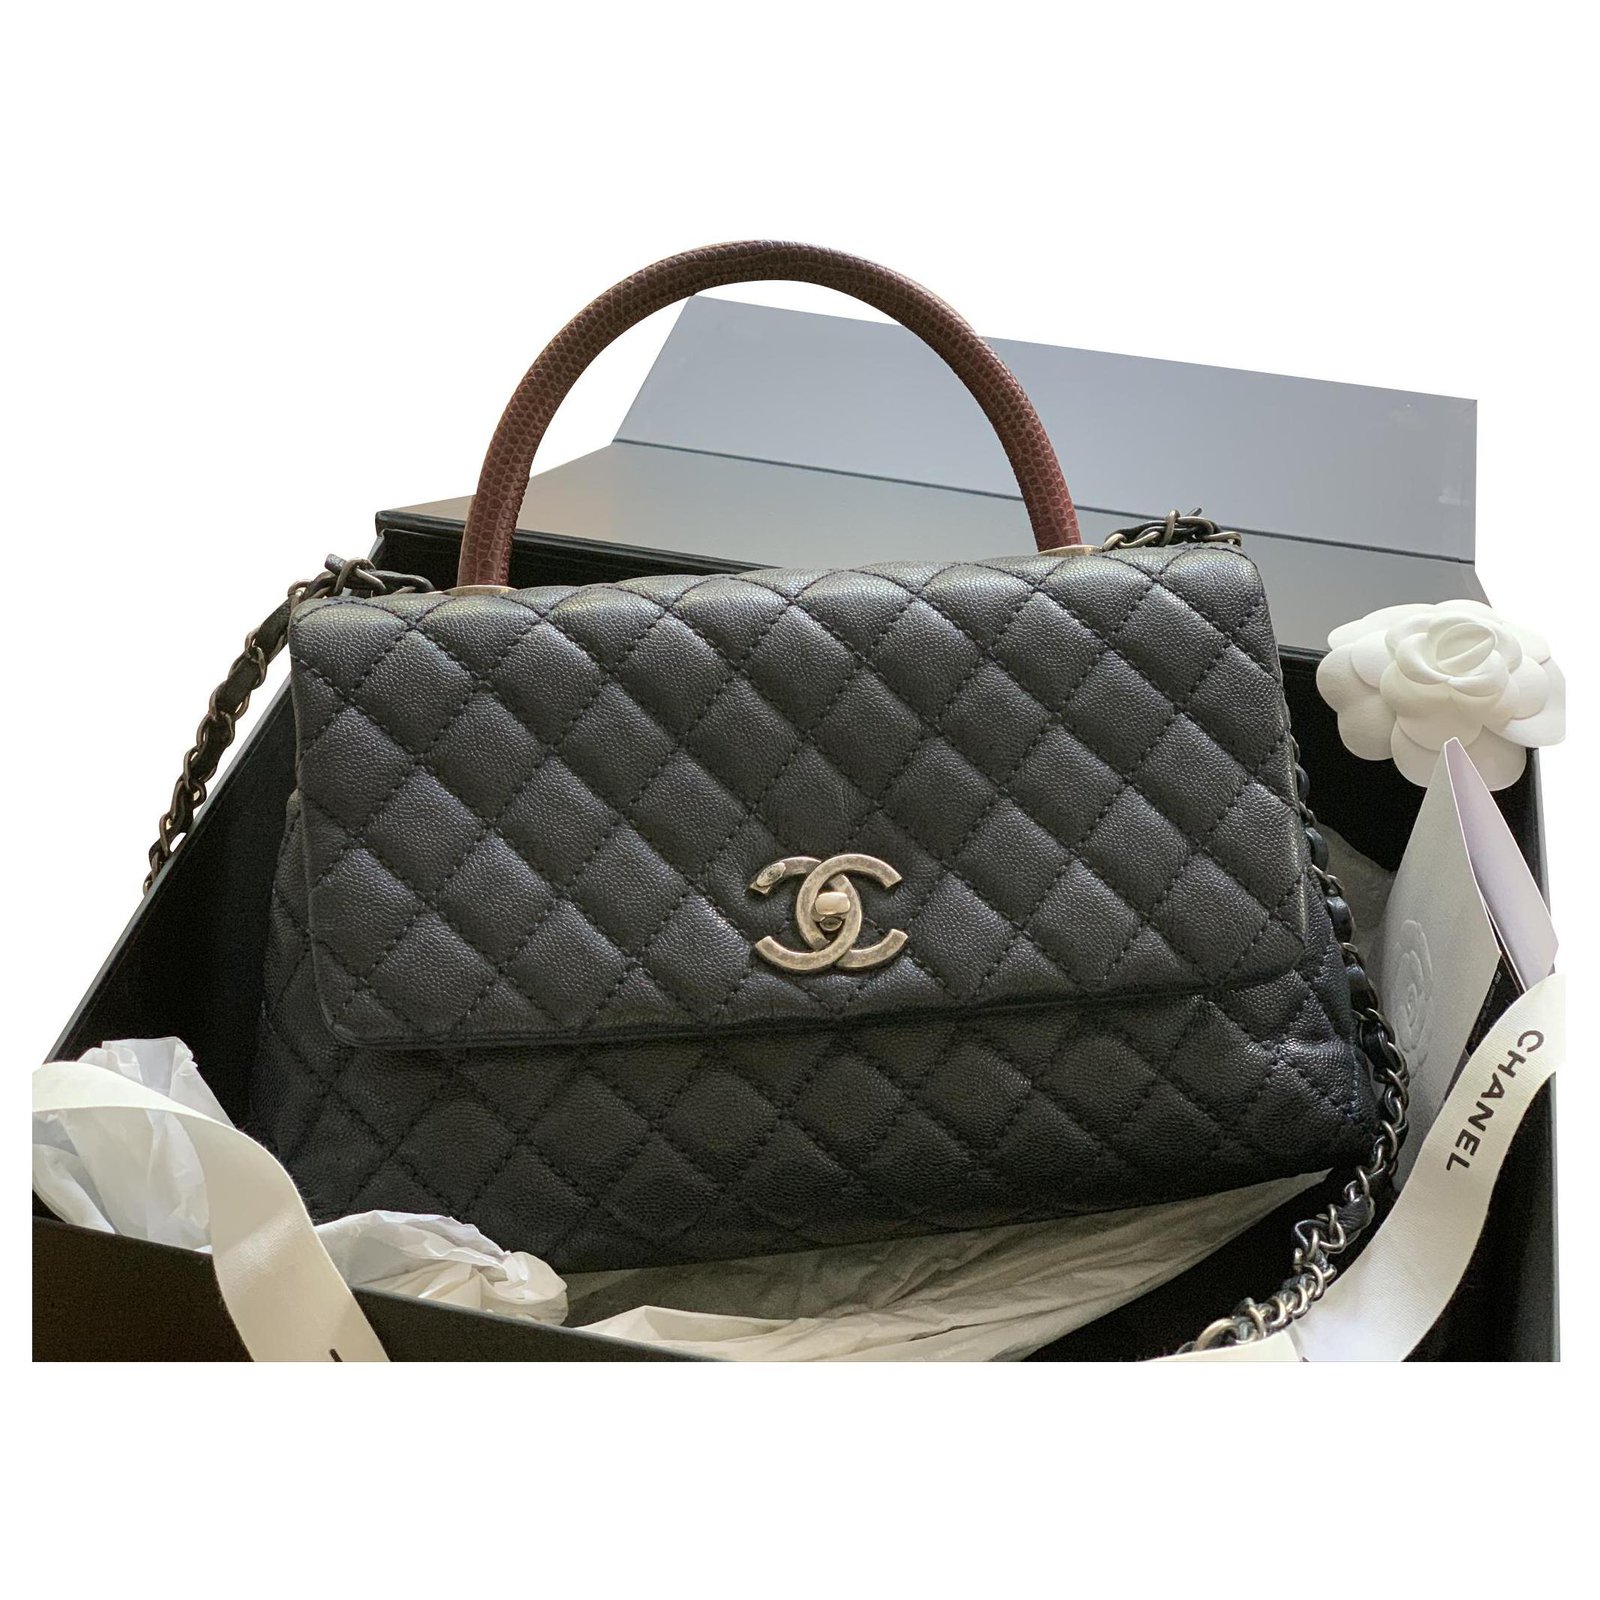 Chanel Medium Coco Handle Bag - Blue Handle Bags, Handbags